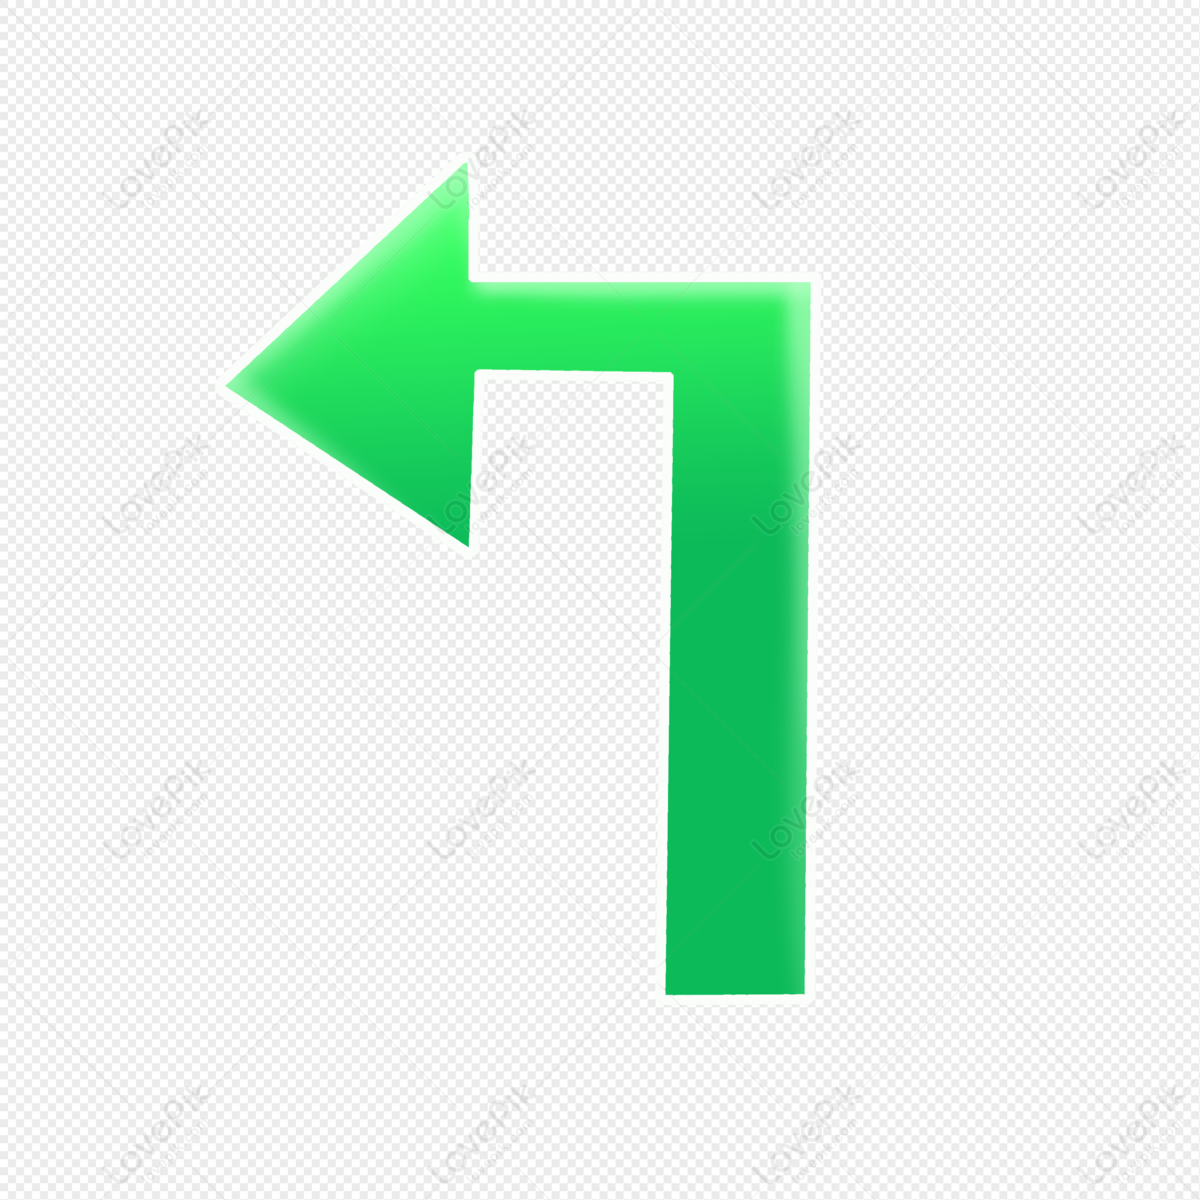 left green arrow icon